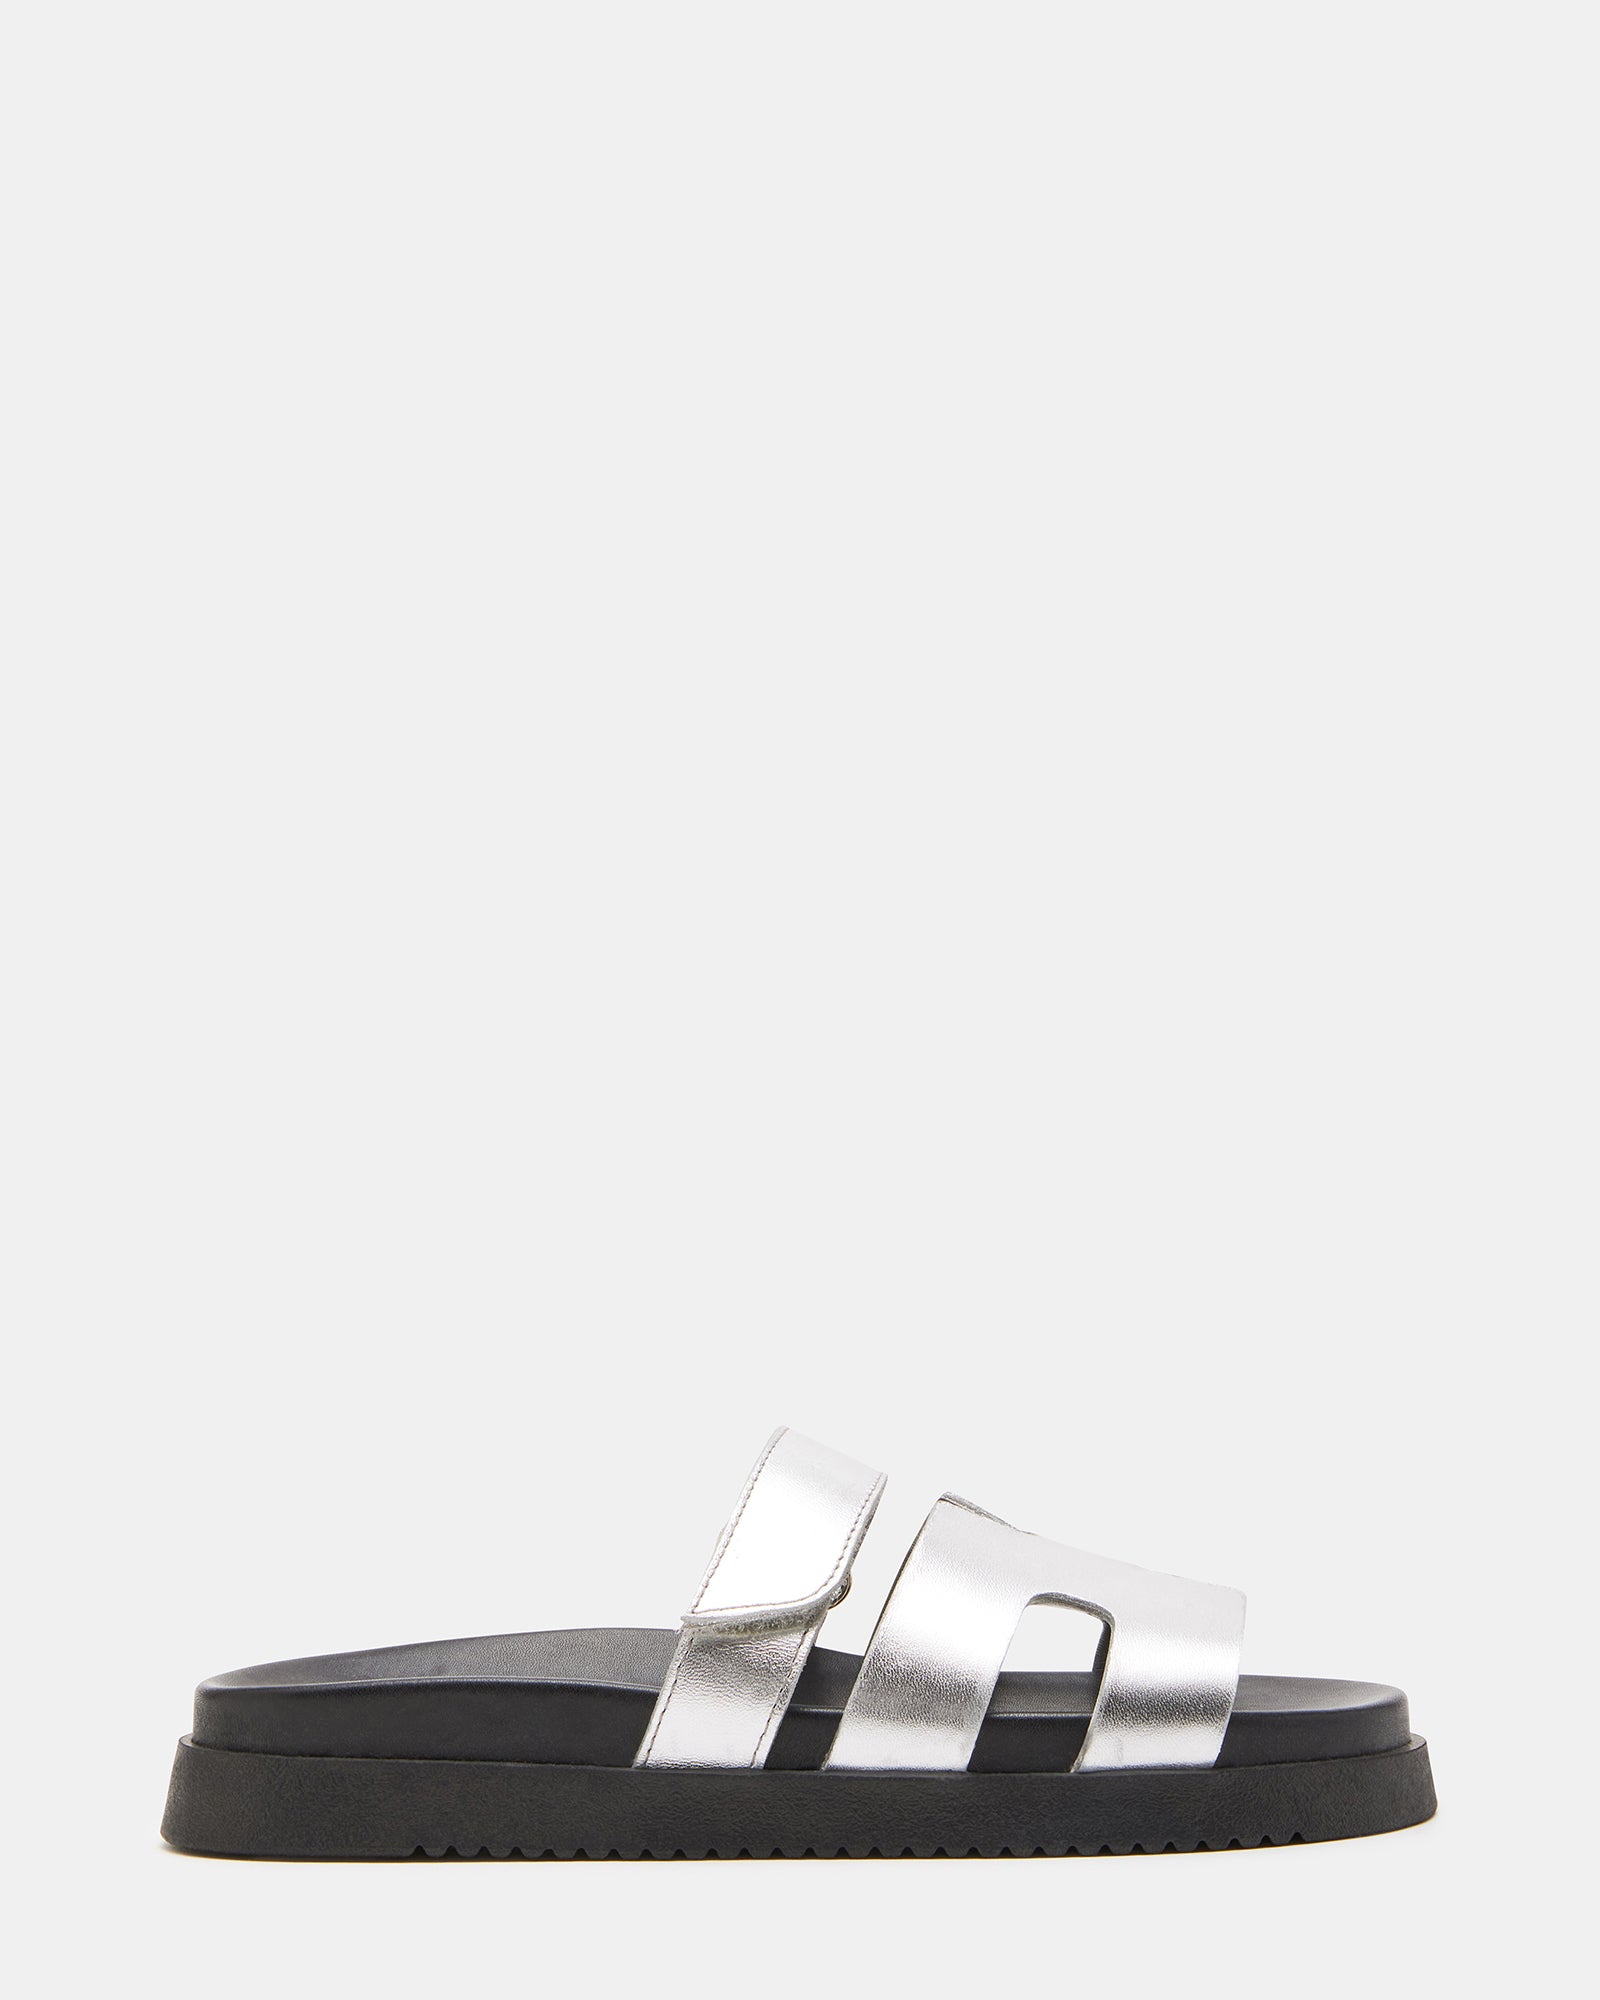 MAYVEN Black/Silver Flatform Slide Sandal | Women's Sandals – Steve Madden